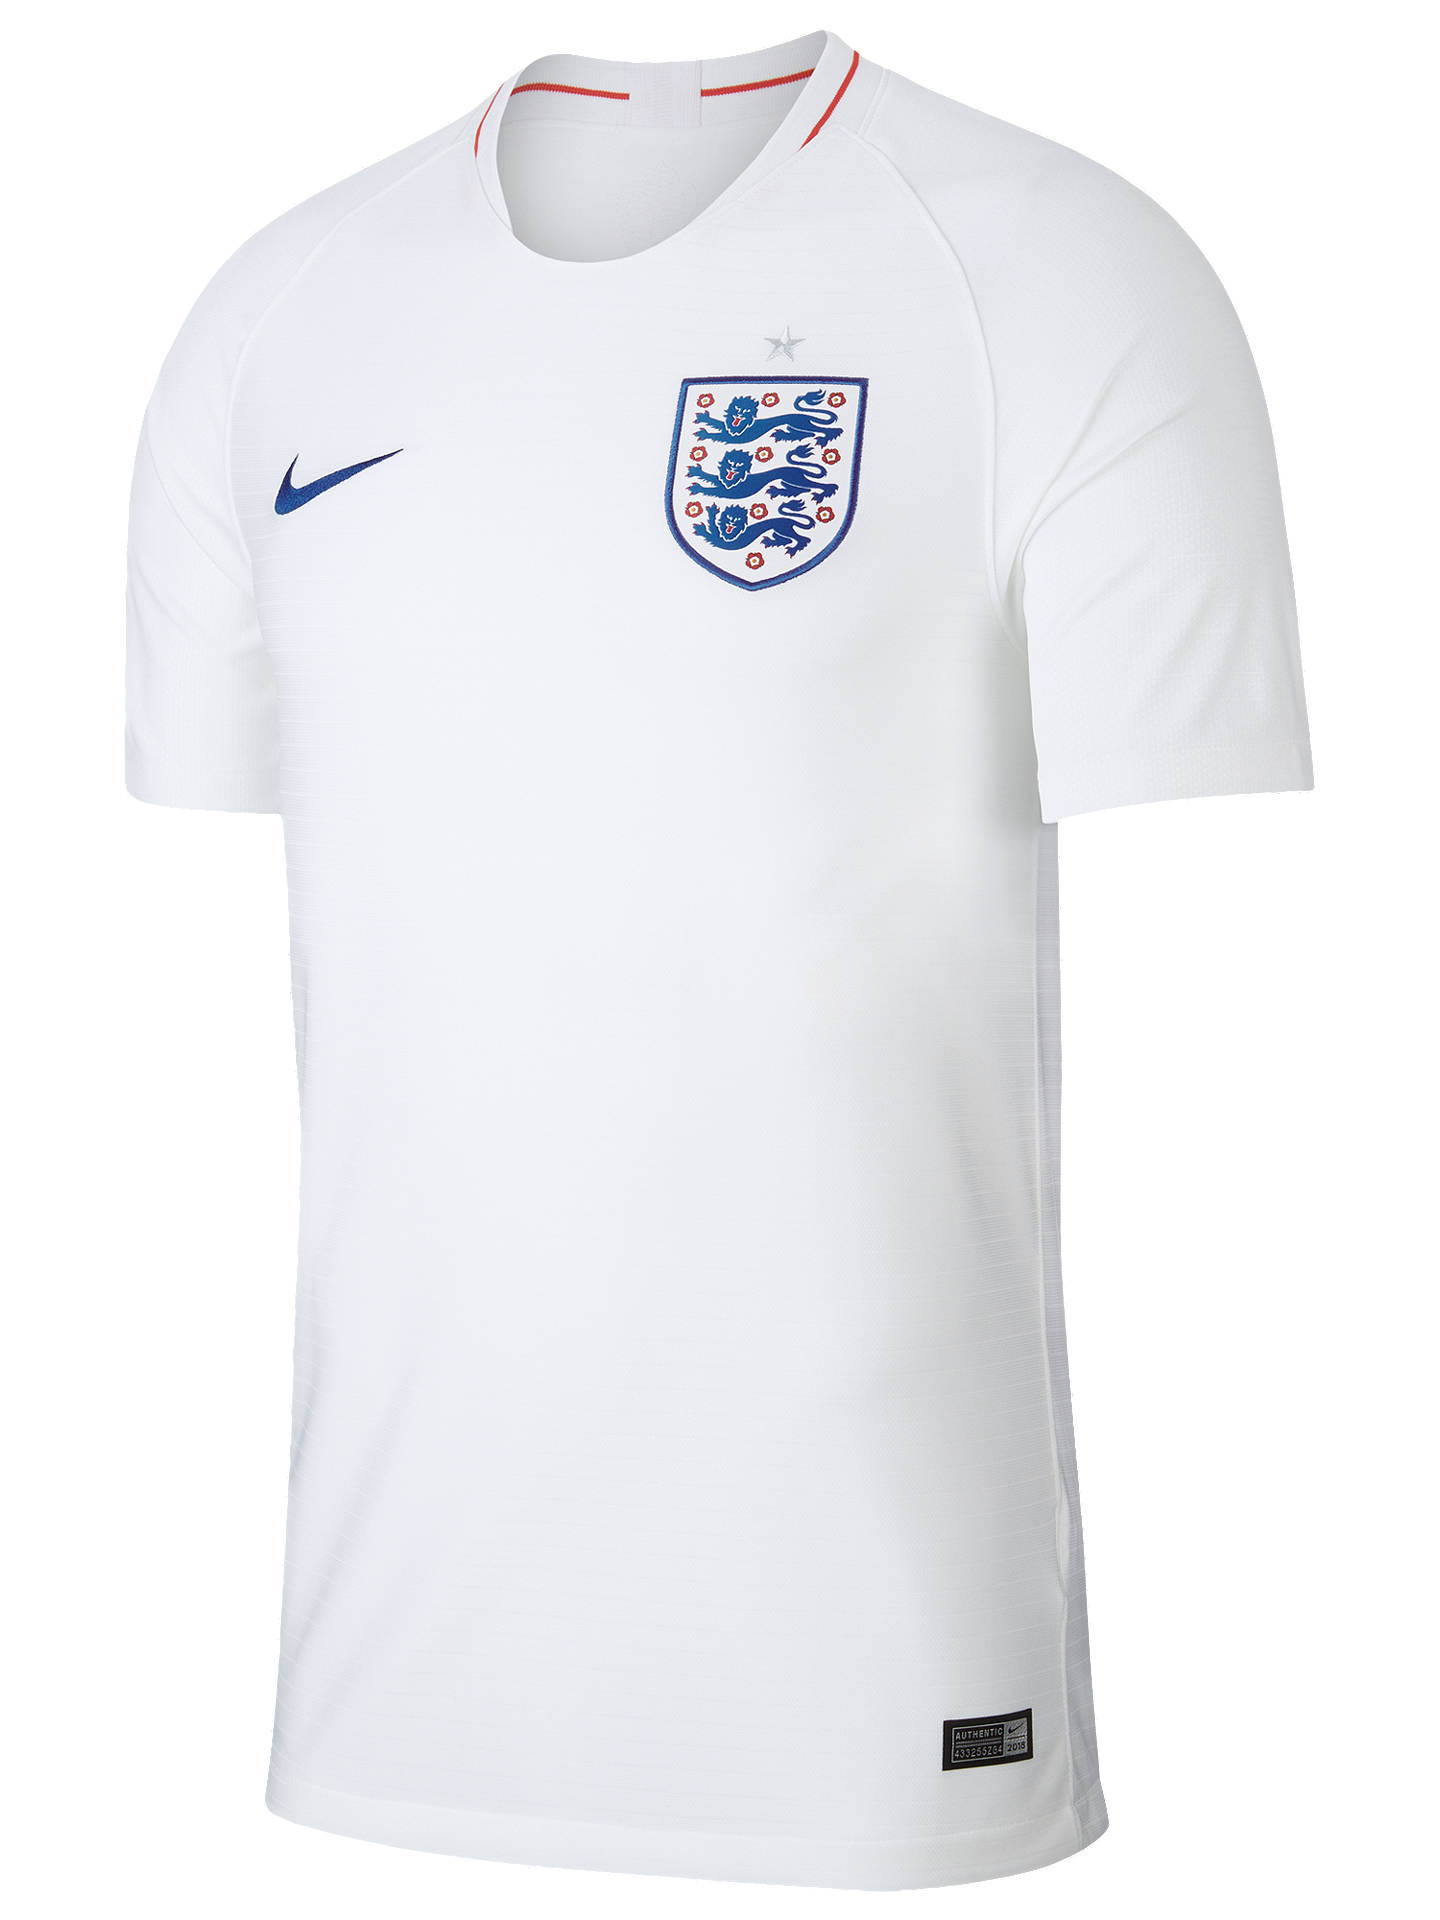 Nike 2018 England Stadium Kit Men's Football Shirt, White at John Lewis ...